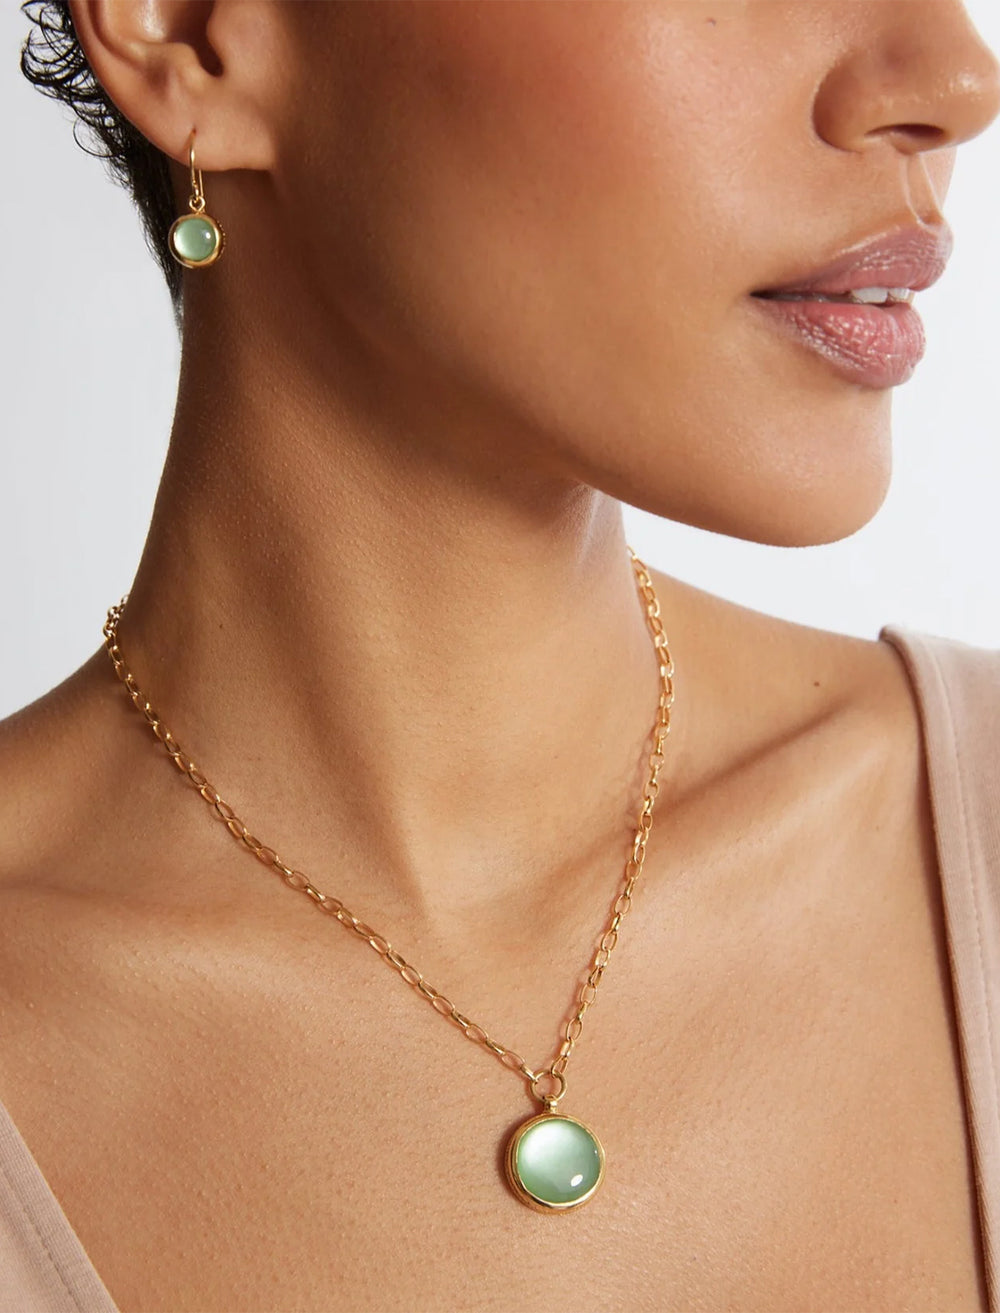 model wearing green quartz drop earrings in gold